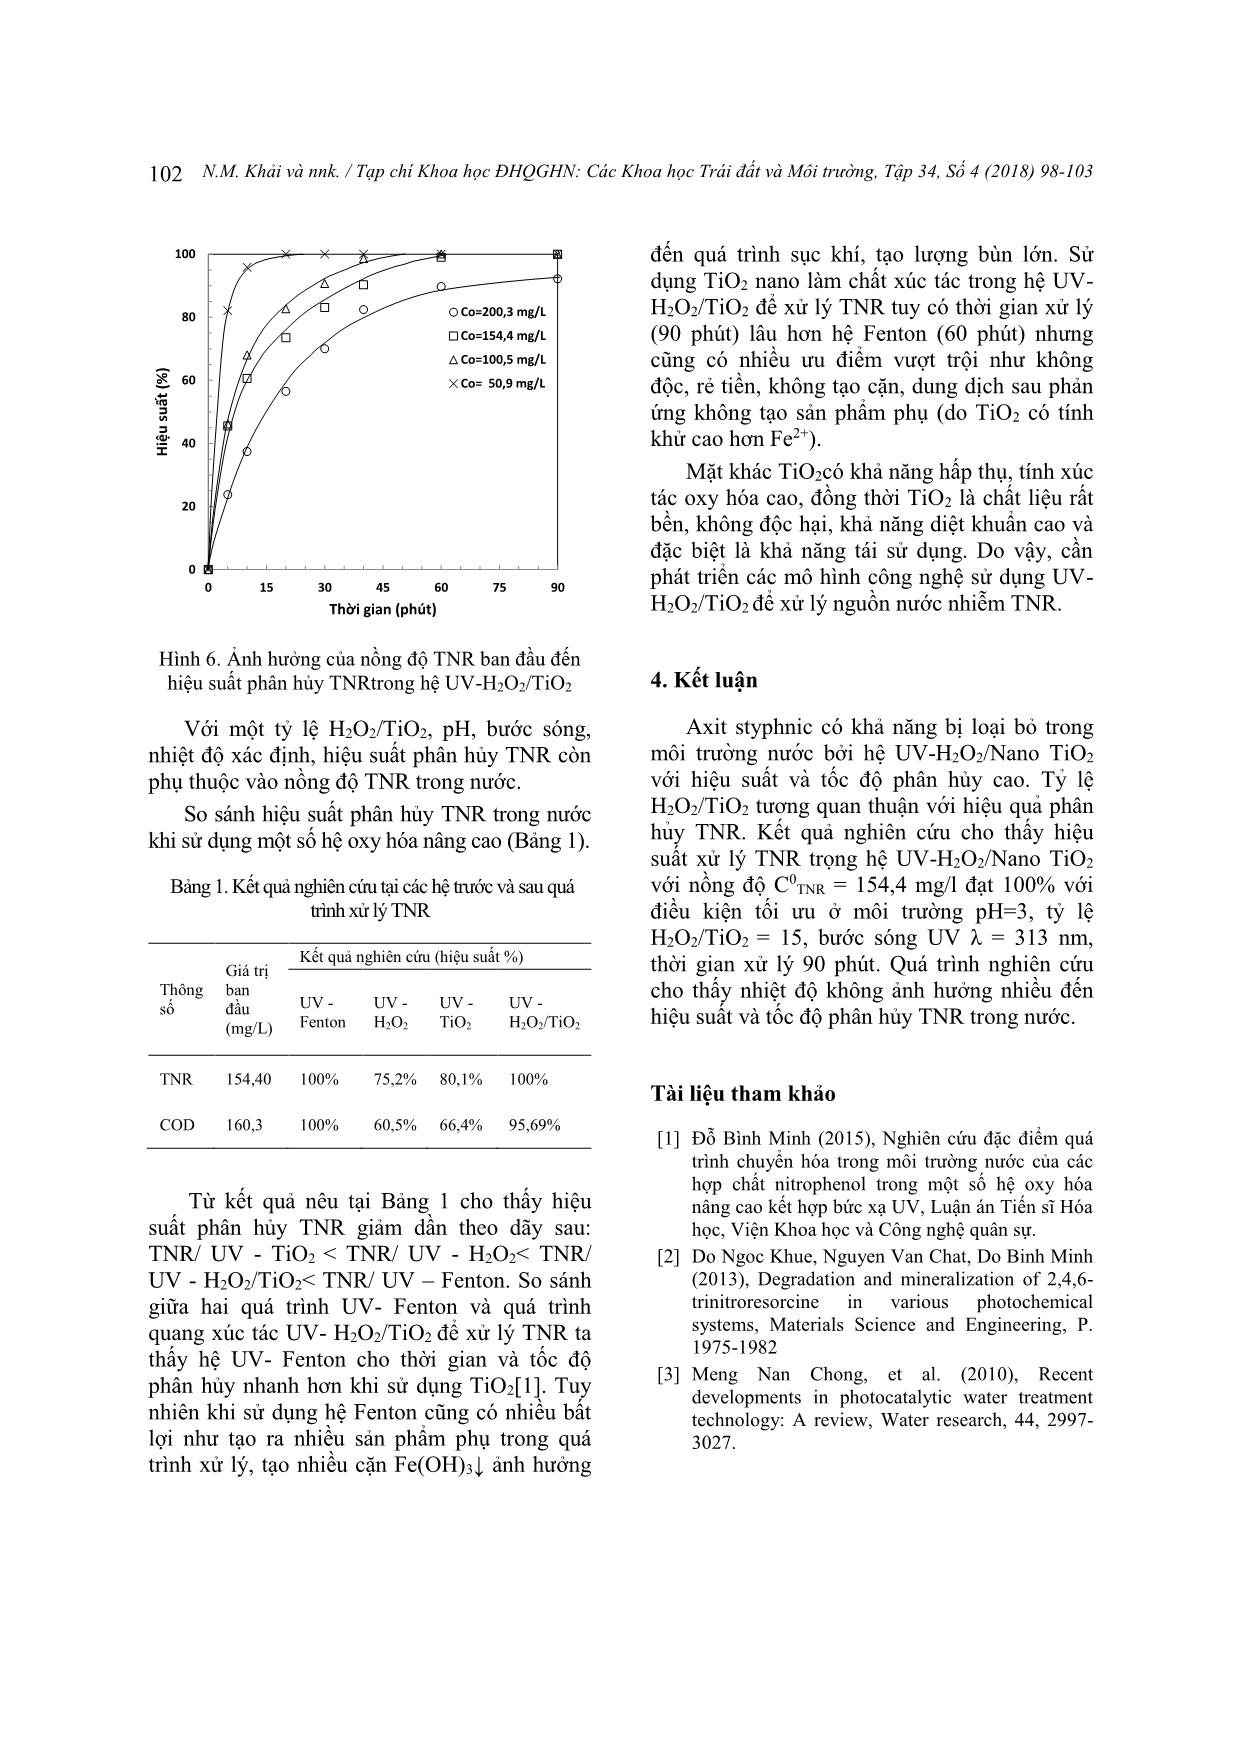 Nghiên cứu xử lý axit styphnic trong nước bằng hệ UV-H₂O₂/Nano TiO₂ trang 5